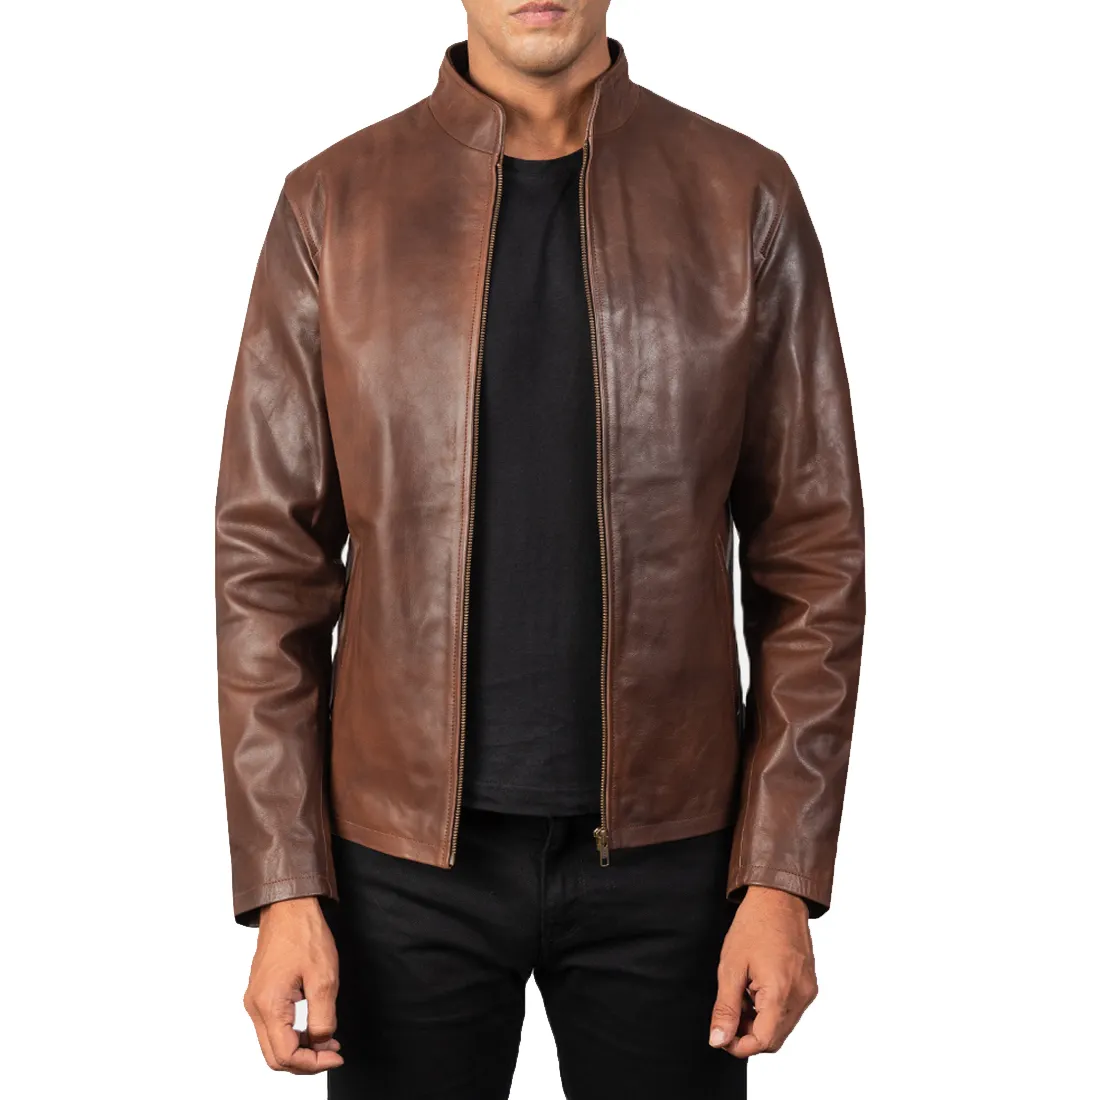 DERİ CEKETLER sıcak satış erkekler özel nakış tasarım en kaliteli deri ceket